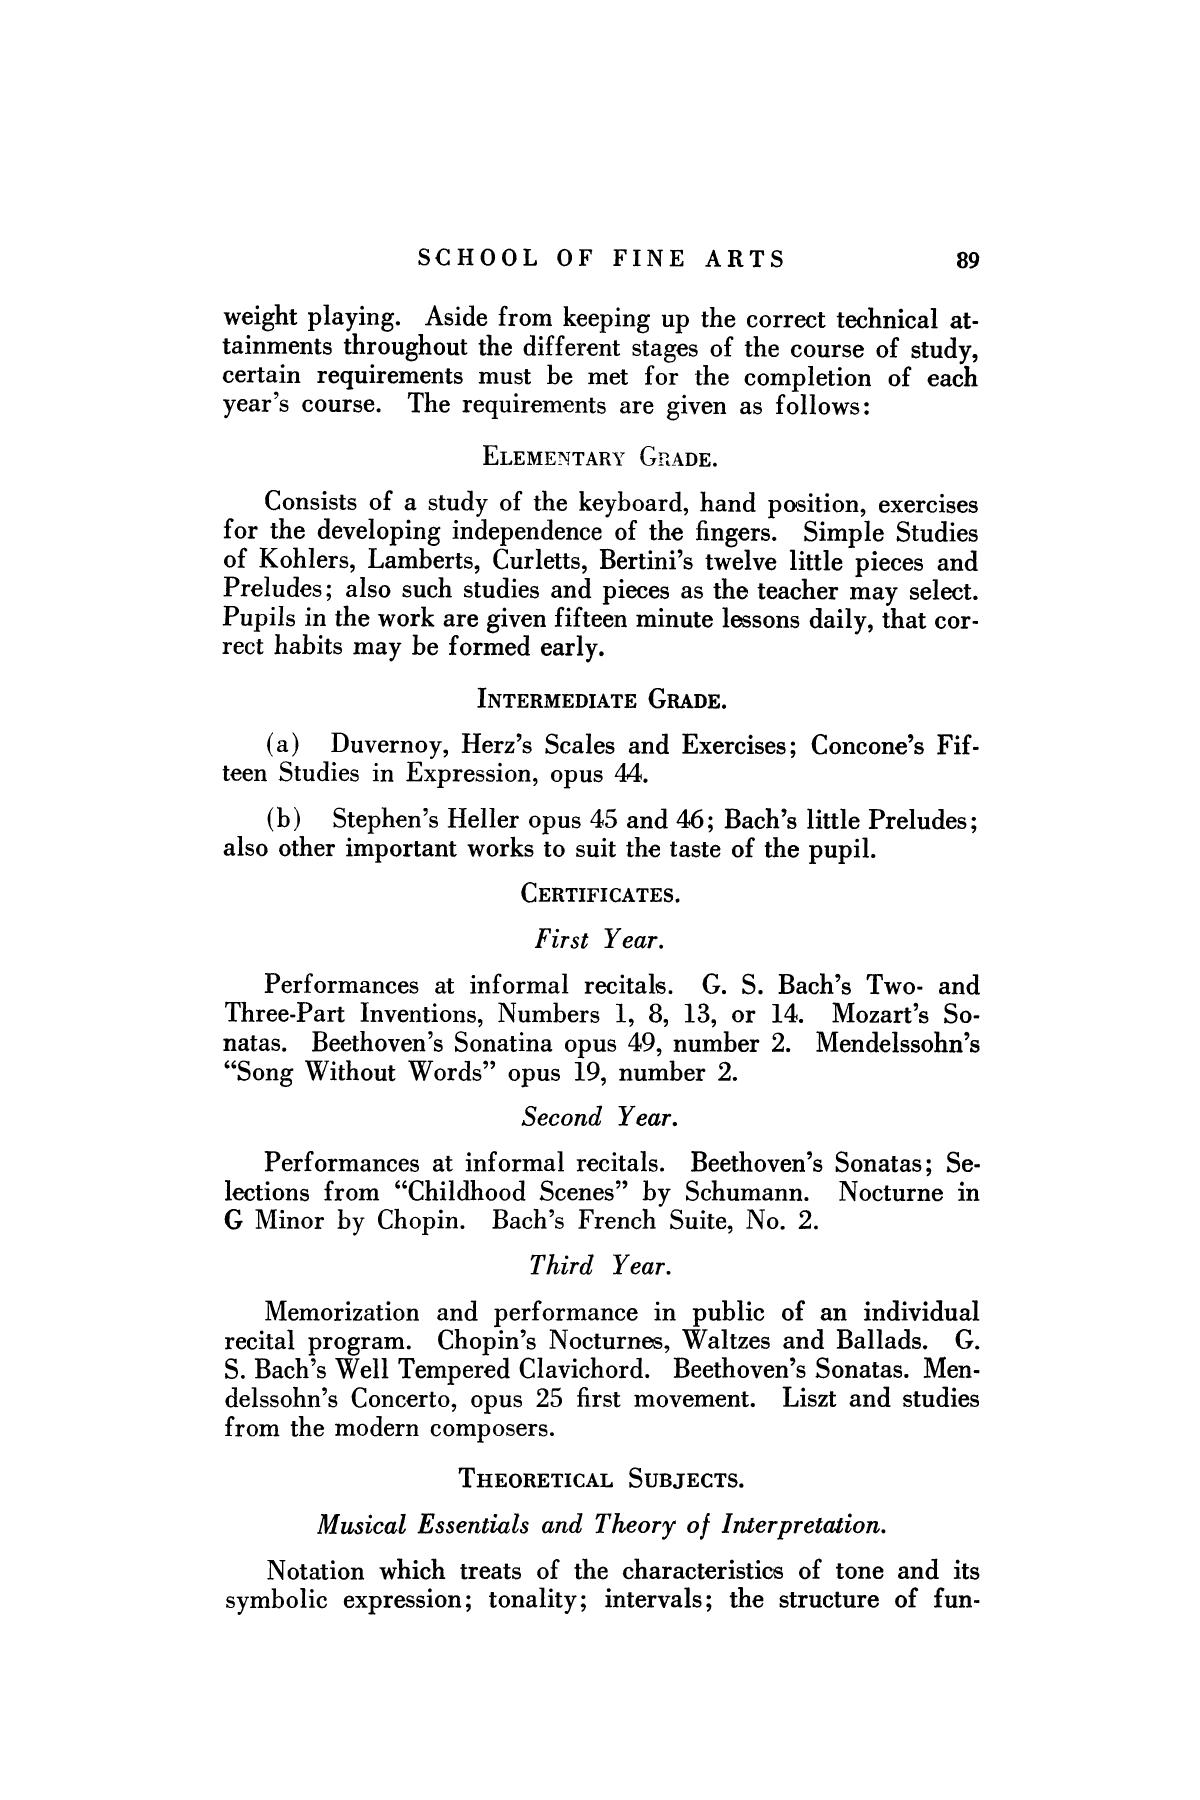 Catalog of Abilene Christian College, 1925-1926
                                                
                                                    89
                                                